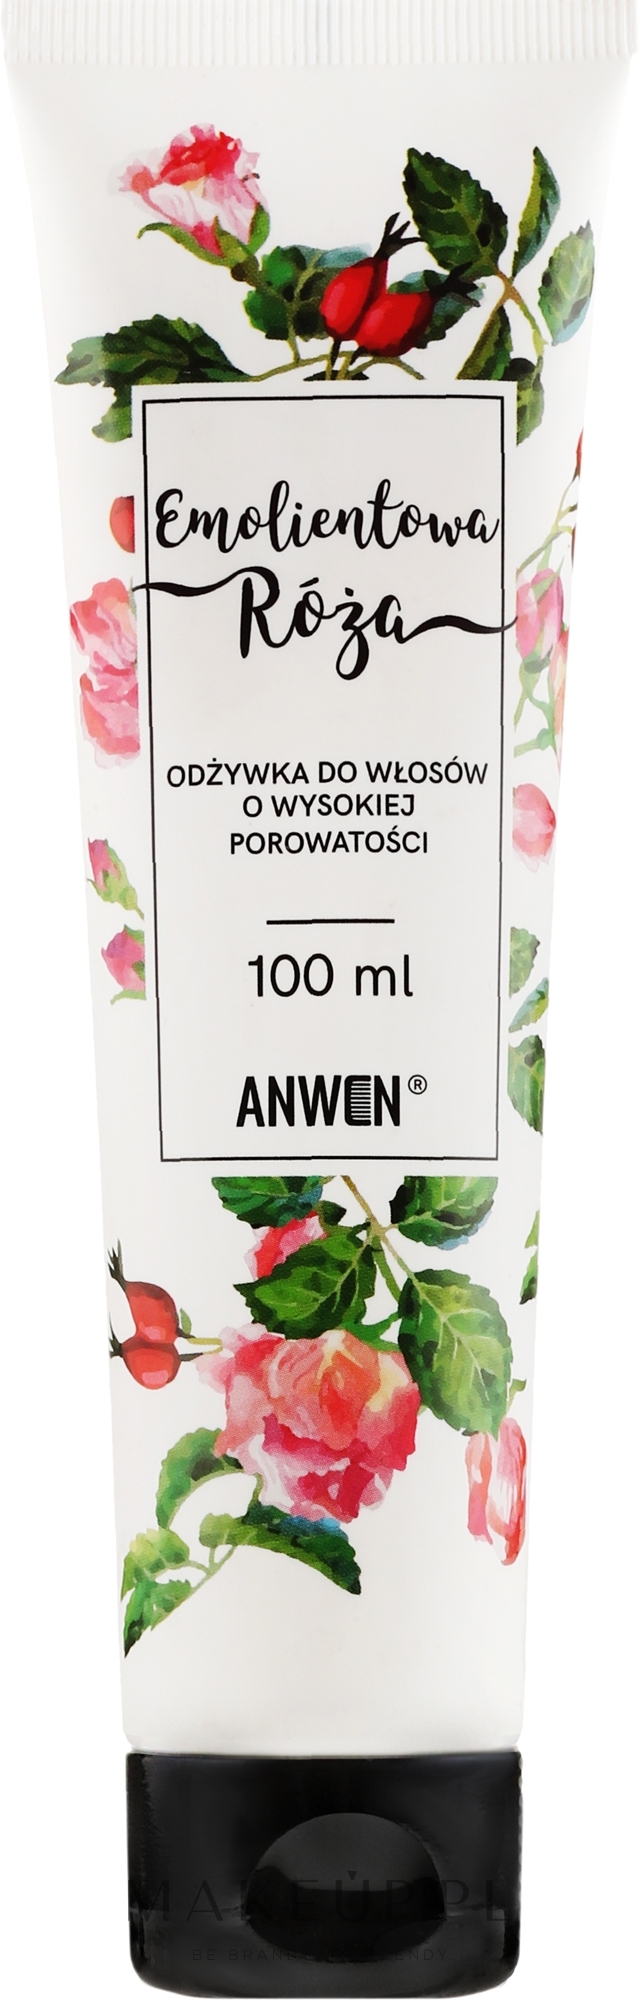 anwen odżywka do włosów o wysokiej porowatości emolientowa róża 200ml